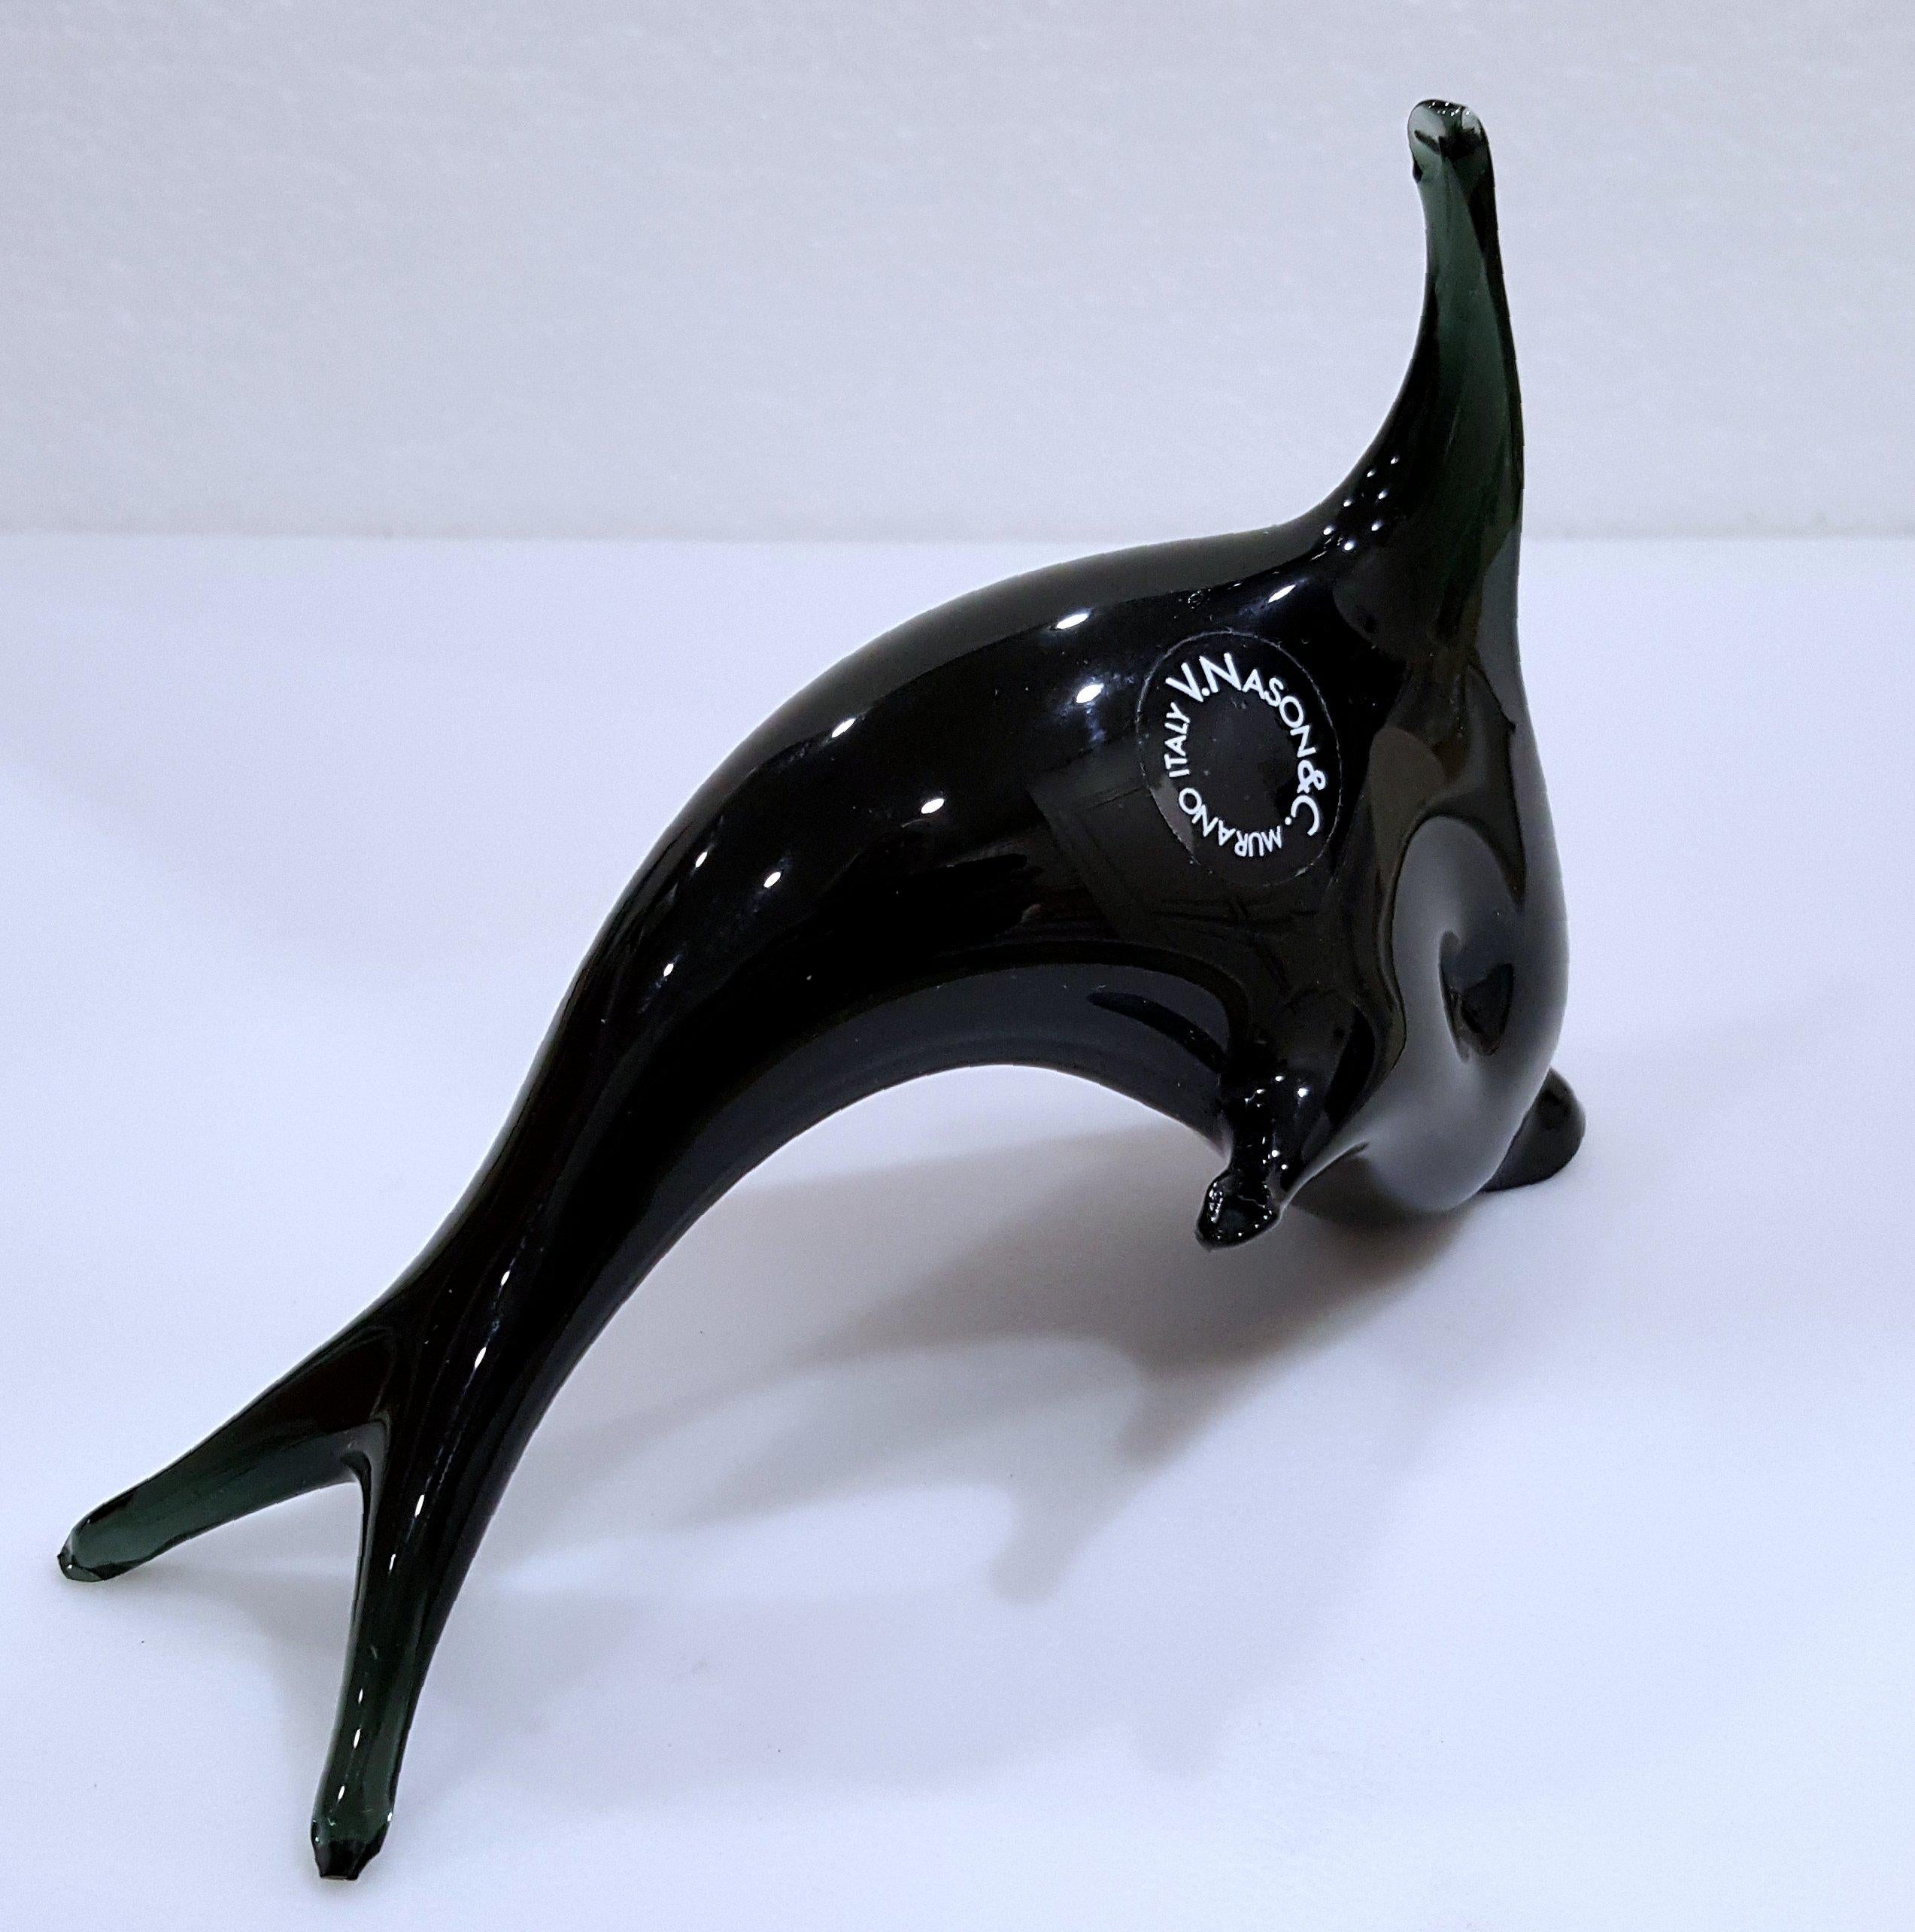 Delphin aus Murano-Glas von V. Nason, Italien. Das Label lautet wie folgt.
Schöner Vintage-Zustand.  Ca. 5,25 x 4 Zoll.

Die Maße sind ungefähre Angaben. Bitte beachten Sie, dass die Farbe auf Ihrem Monitor und/oder in Ihrer Umgebung etwas anders